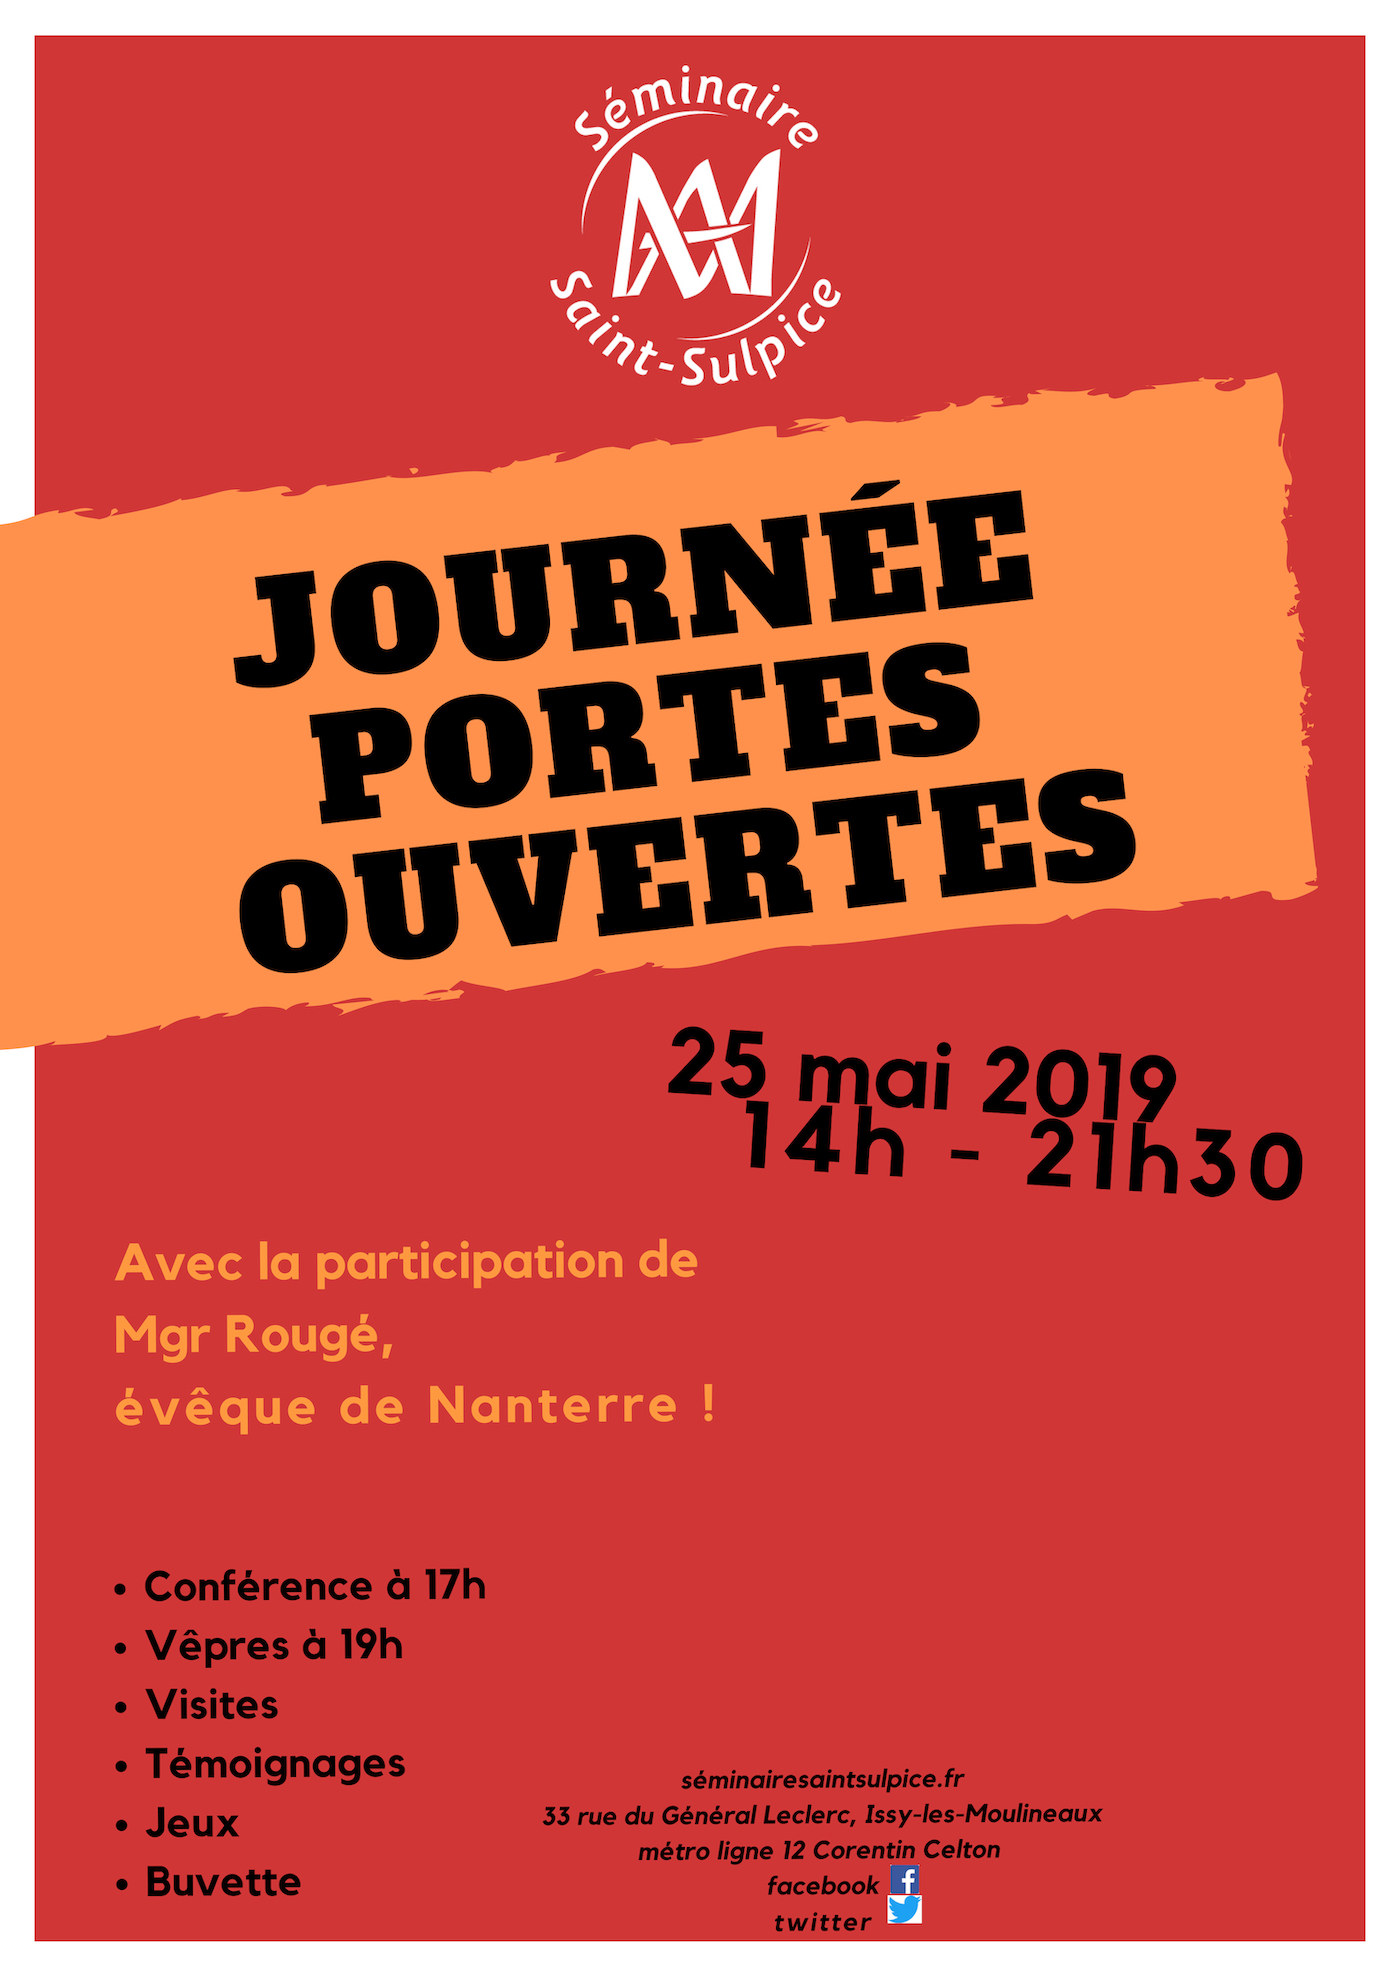 Portes ouvertes du Séminaire Saint-Sulpice à Issy-les-Moulineaux (92) le 25 mai 2019